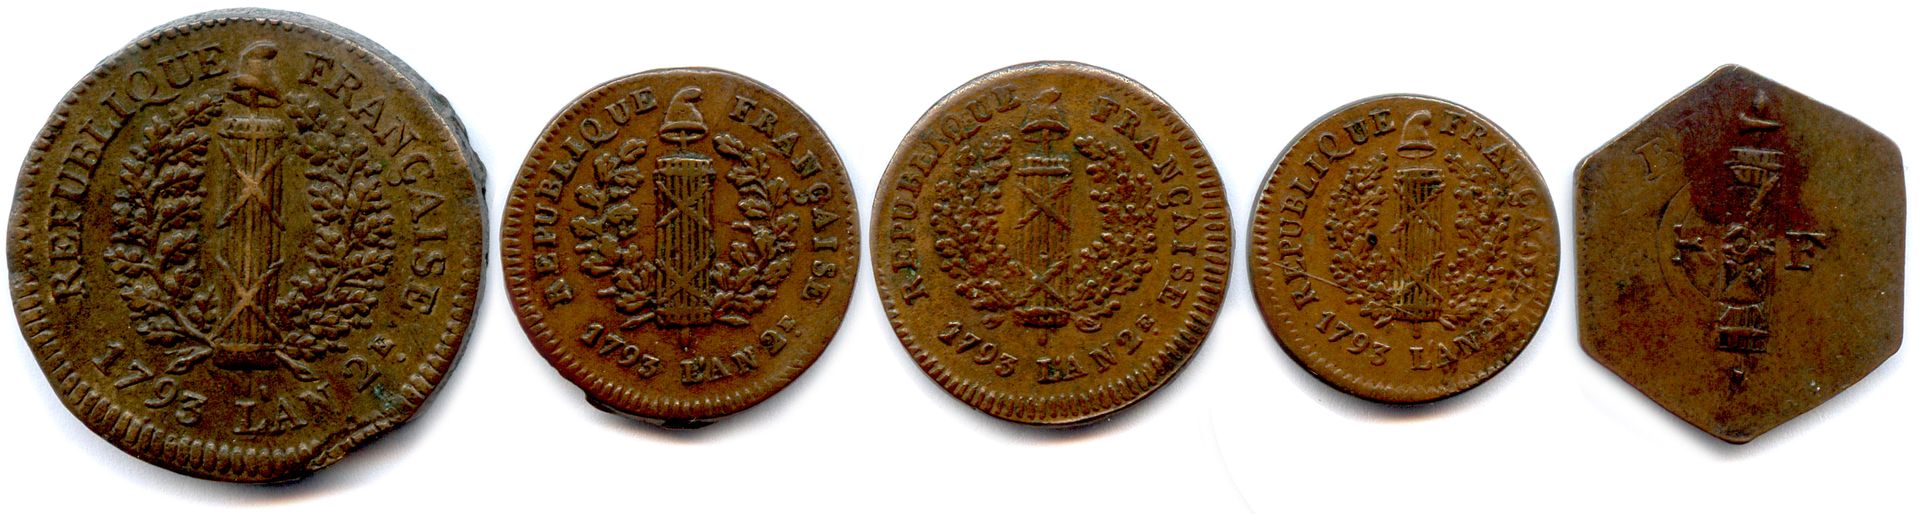 Null 1793年4月6日至7月22日普军和奥军对美因茨的围攻

五枚铜币：5索尔、2索尔（2个前）、1793年1索尔和1793年美因茨大桥收费的12克雷泽。&hellip;